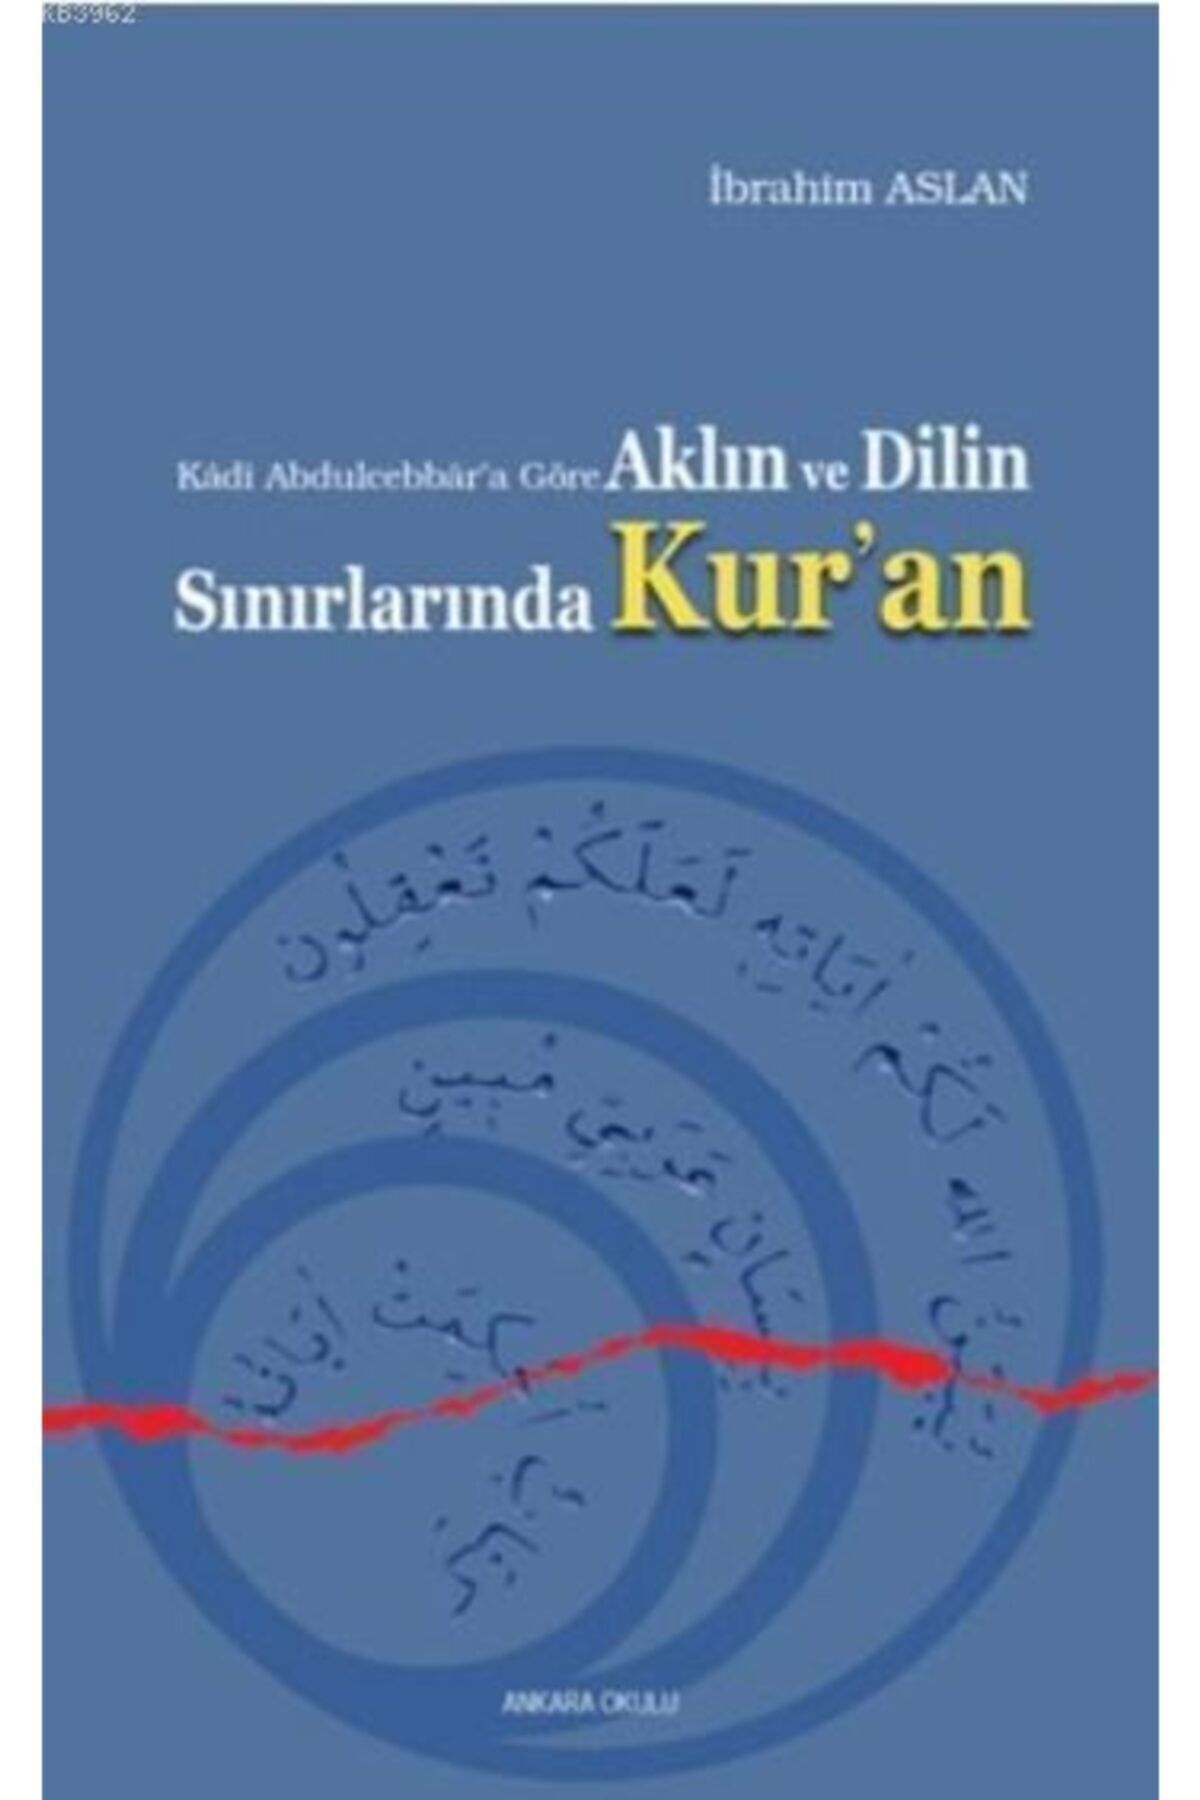 Ankara Okulu Yayınları Aklın Ve Dilin Sınırlarında Kur'an; Kadi Abdulcebbar'a Göre